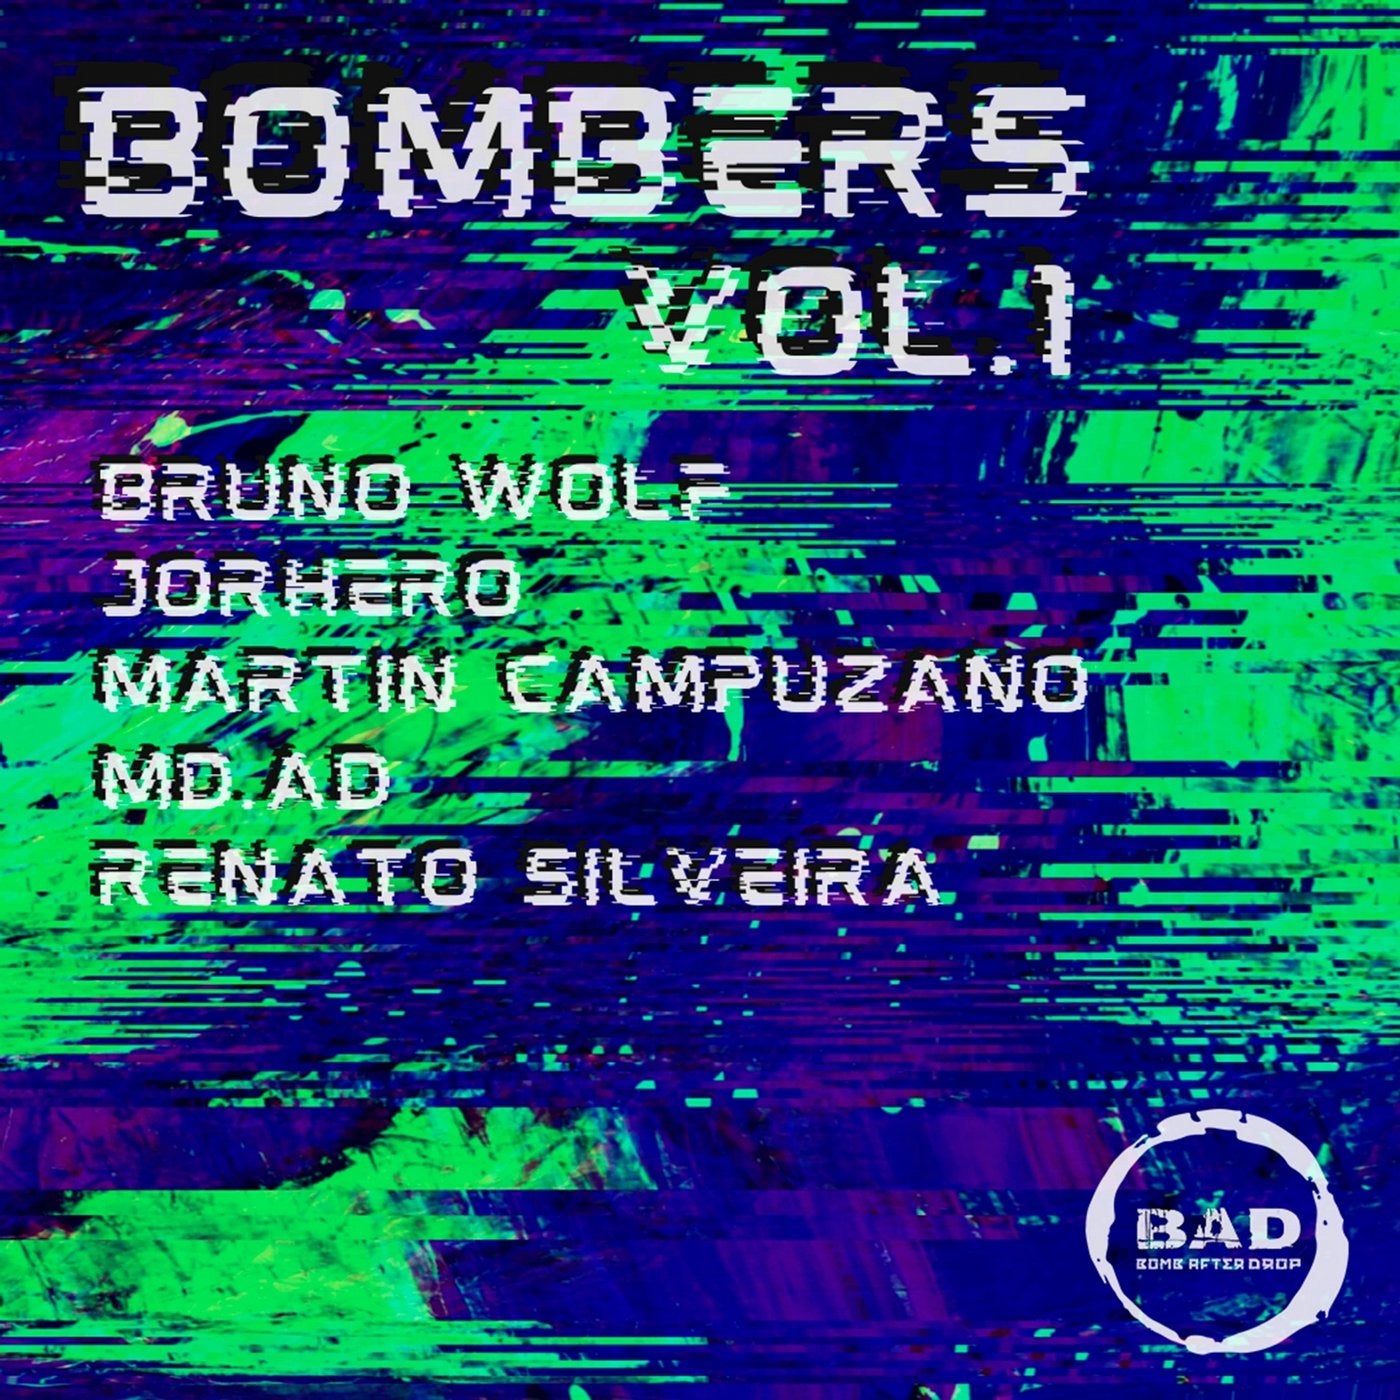 Bombers Vol.1